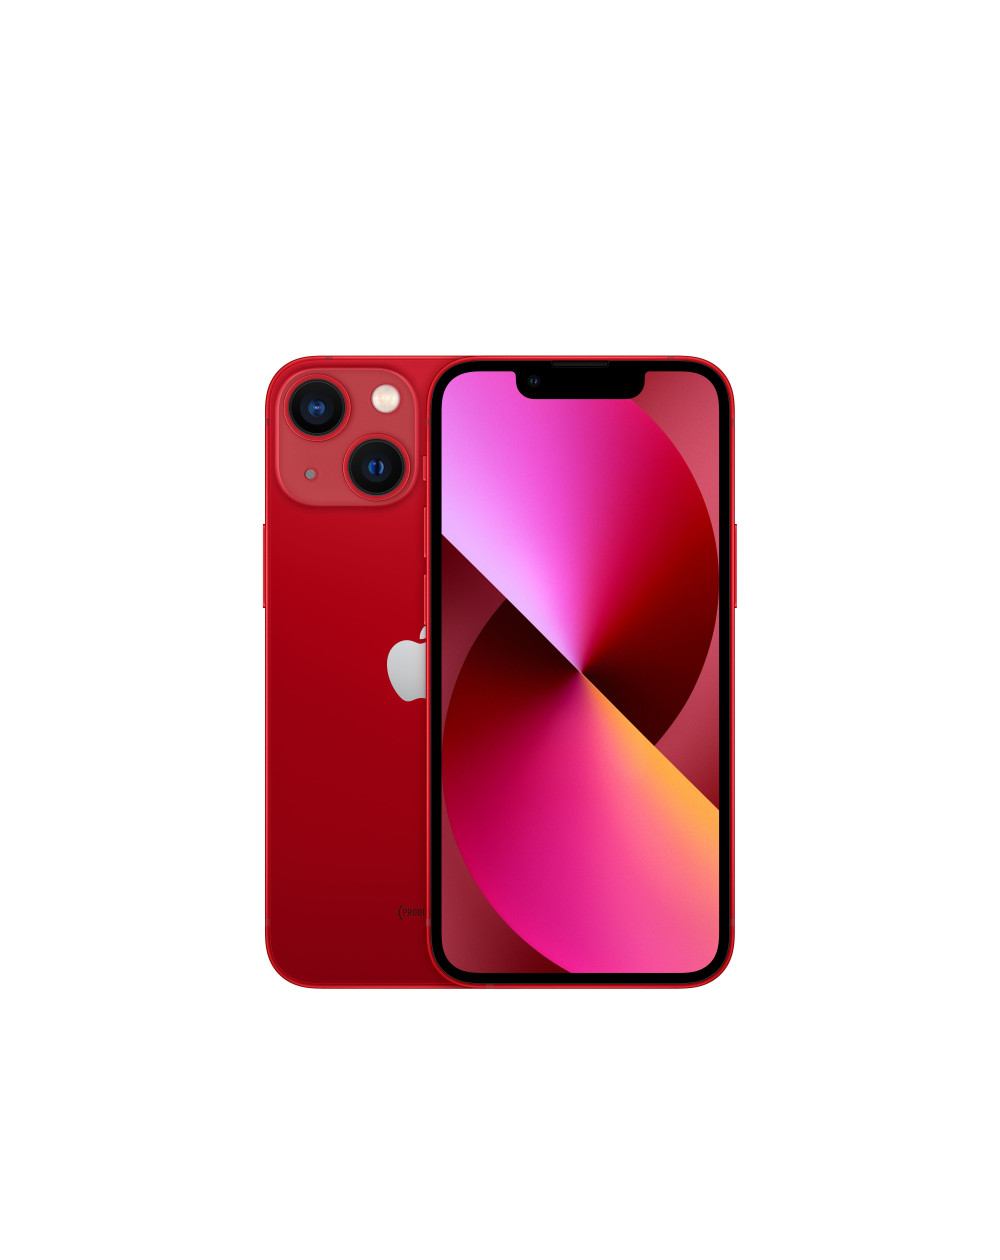 iPhone 13 mini 128GB (PRODUCT)RED - Prodotto rigenerato grado B - C&C Shop